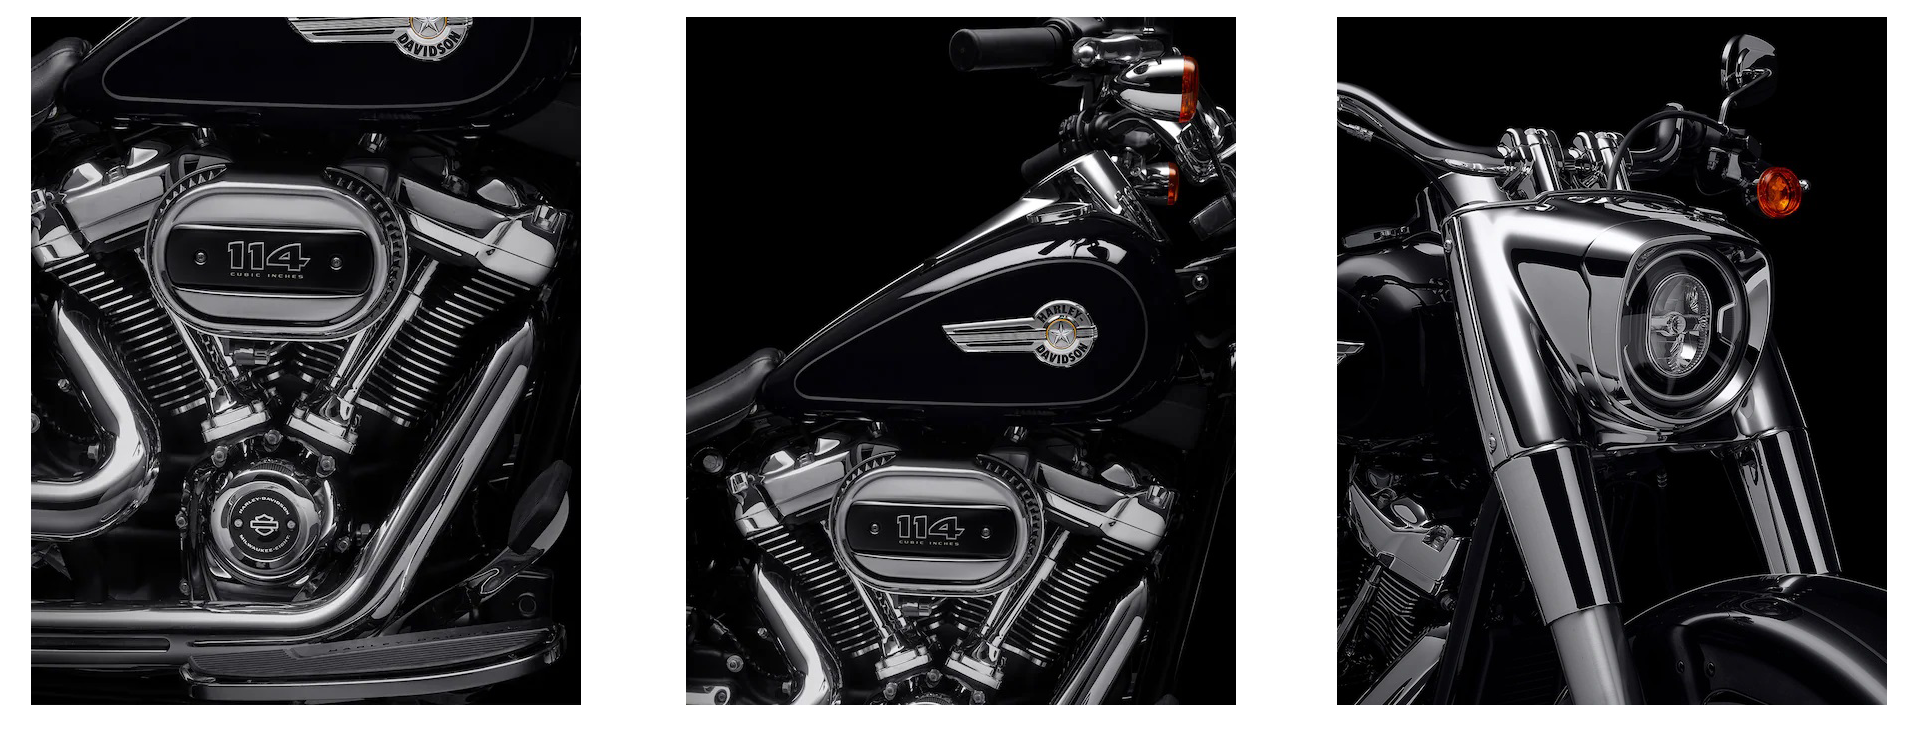 Harley-Davidson FLFBS Fat Boy 114 bei Harley-Davidson Mönchaltor Zürich kaufen